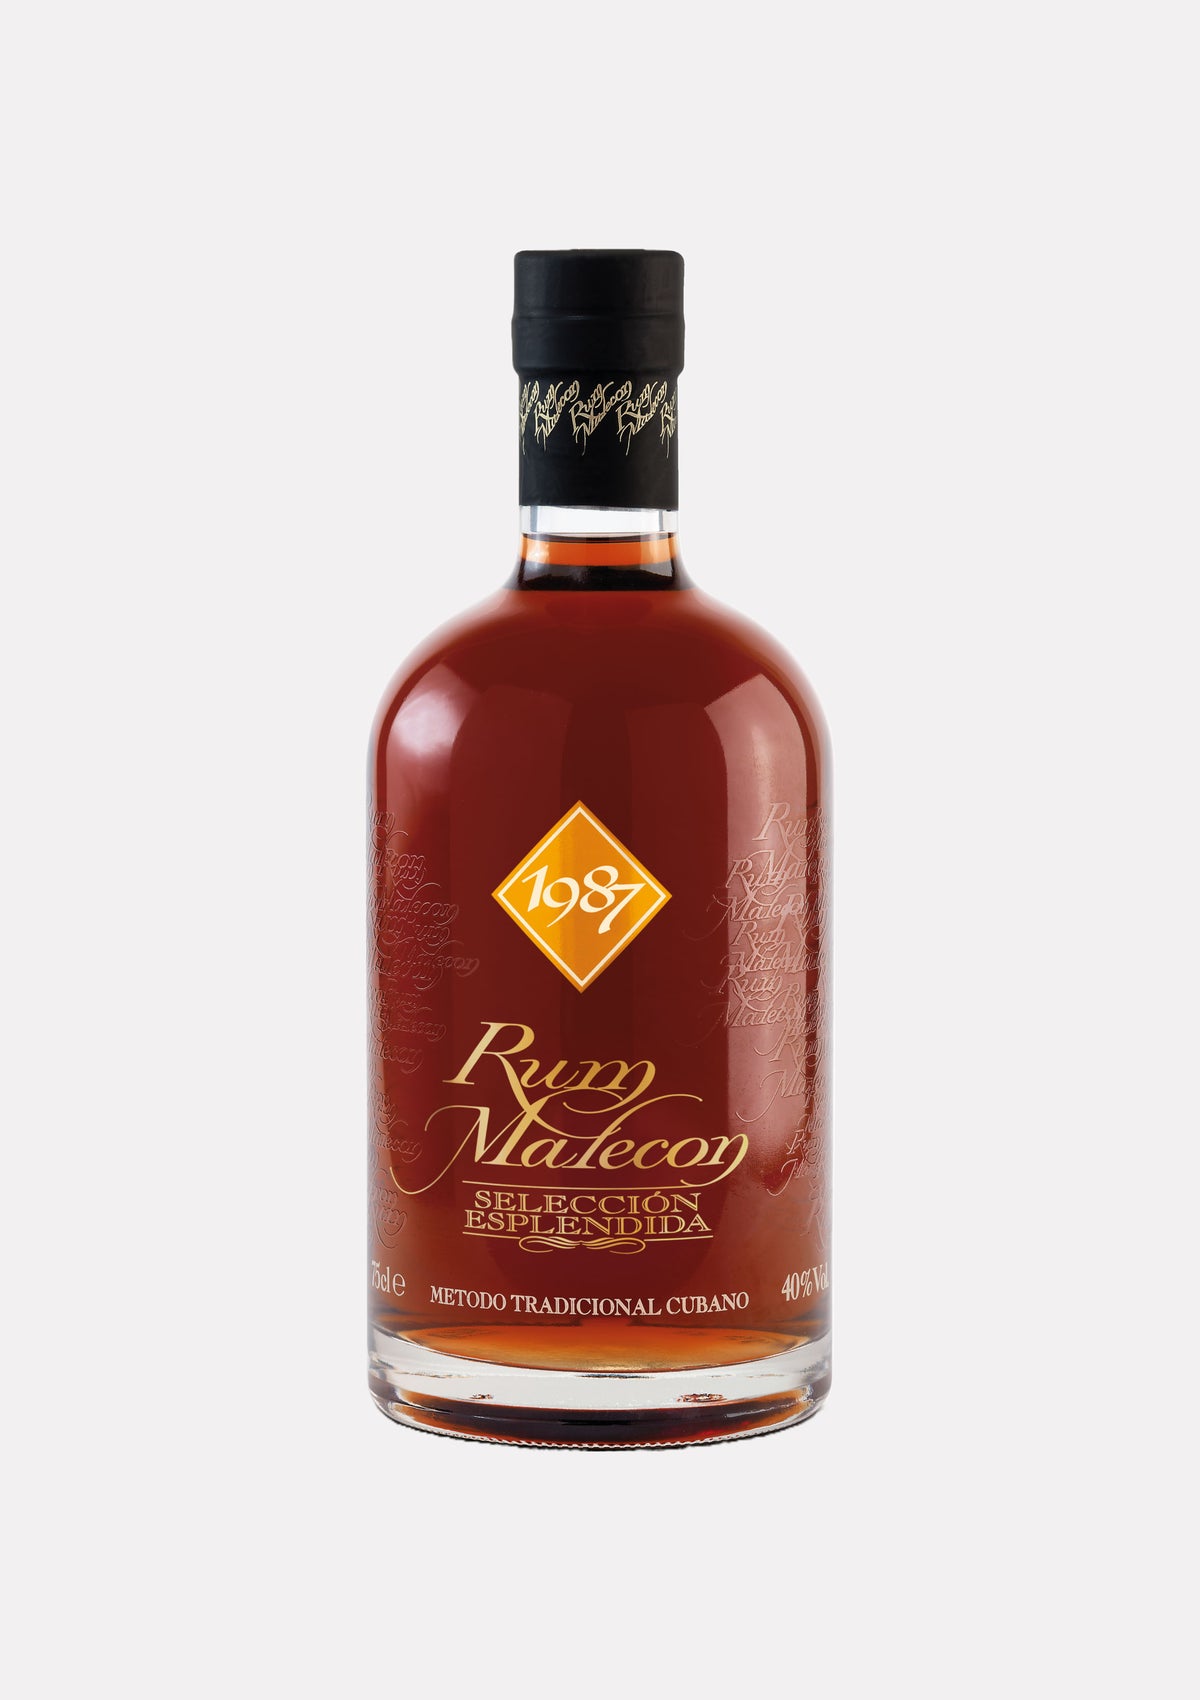 Rum Malecon Seleccion Esplendida Vintage 1987